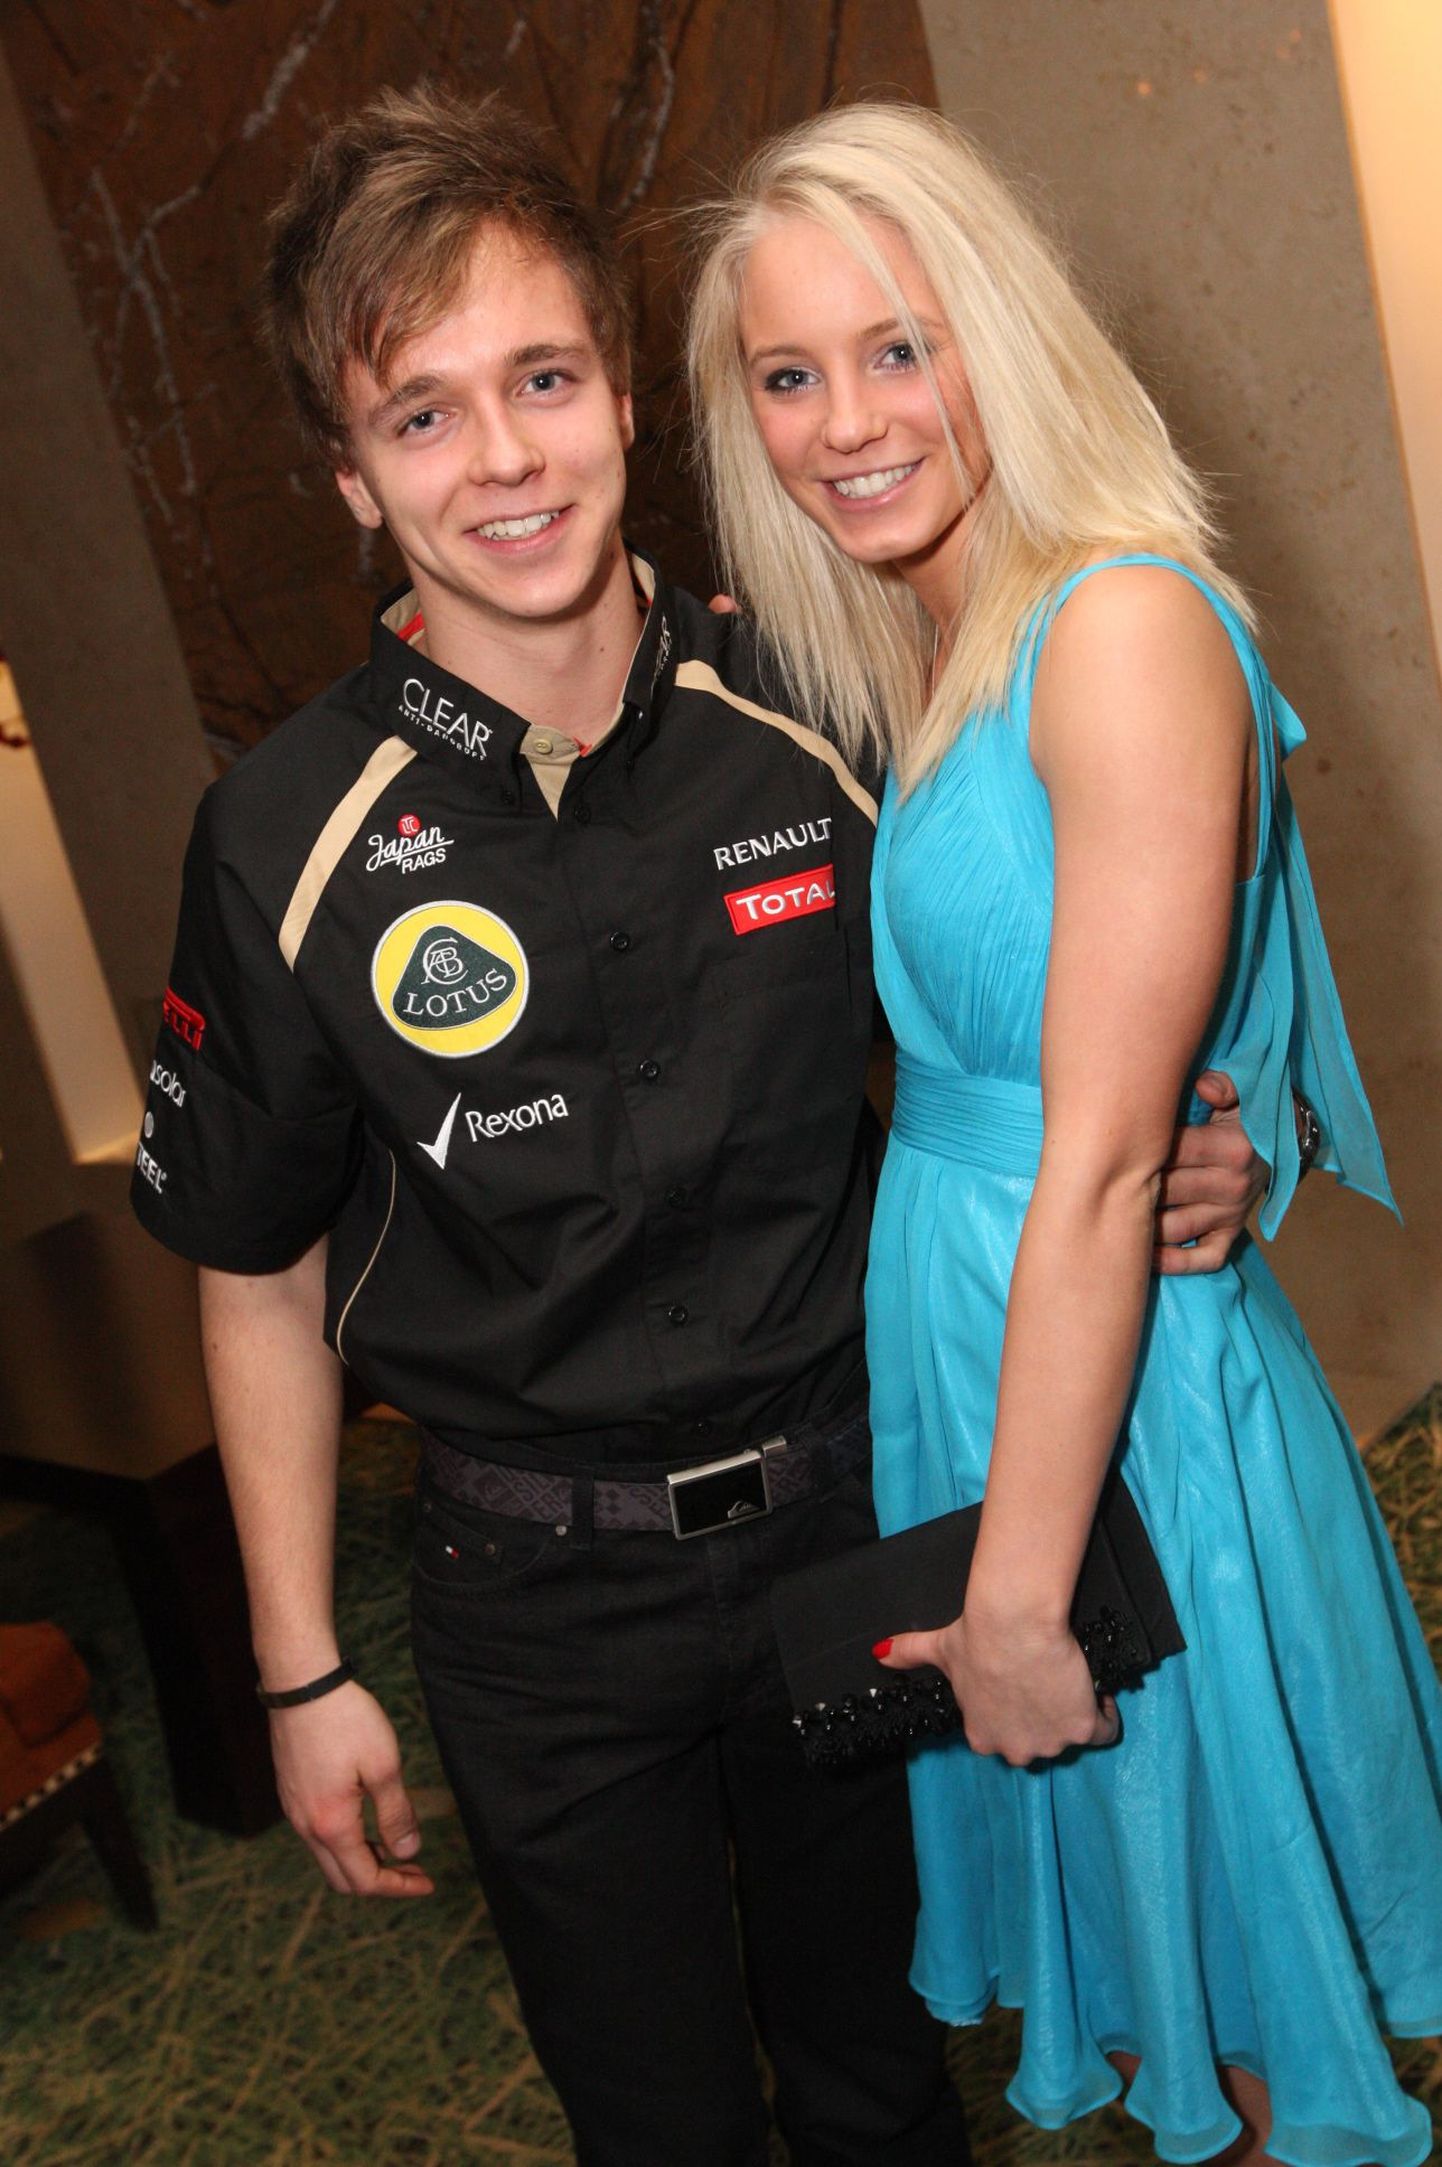 Kevin Korjus ja Lotus F1 meeskonna poolt korraldatud lanseerimisõhtu Nordic Hotel Forumis 7. märtsil 2012
Kevin Korjus esitles üritusel ka oma tüdruksõpra Maarja Laidnat